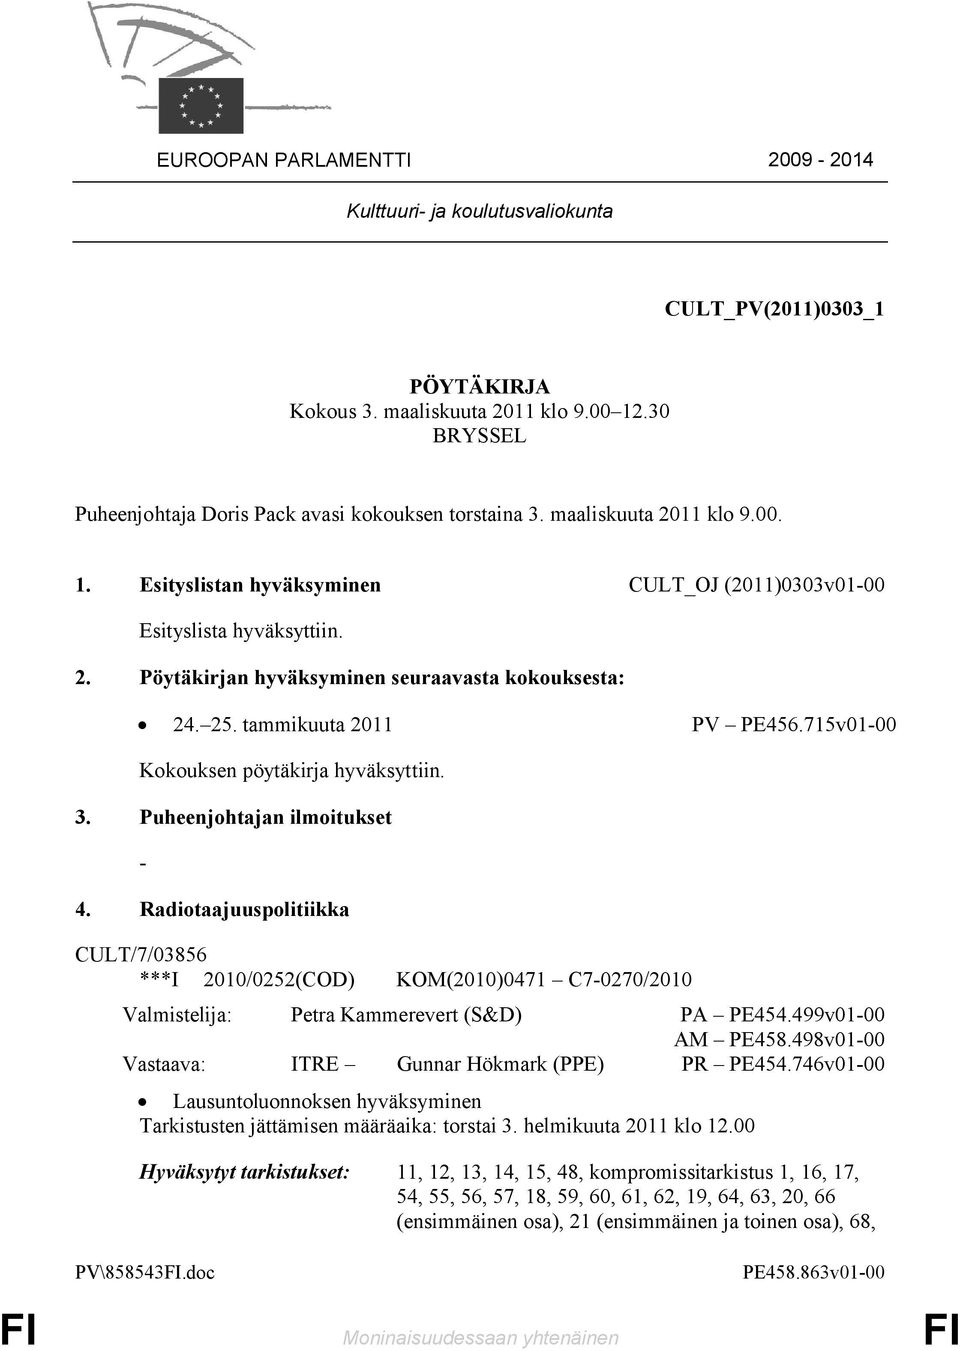 715v01-00 Kokouksen pöytäkirja hyväksyttiin. 3. Puheenjohtajan ilmoitukset - 4.